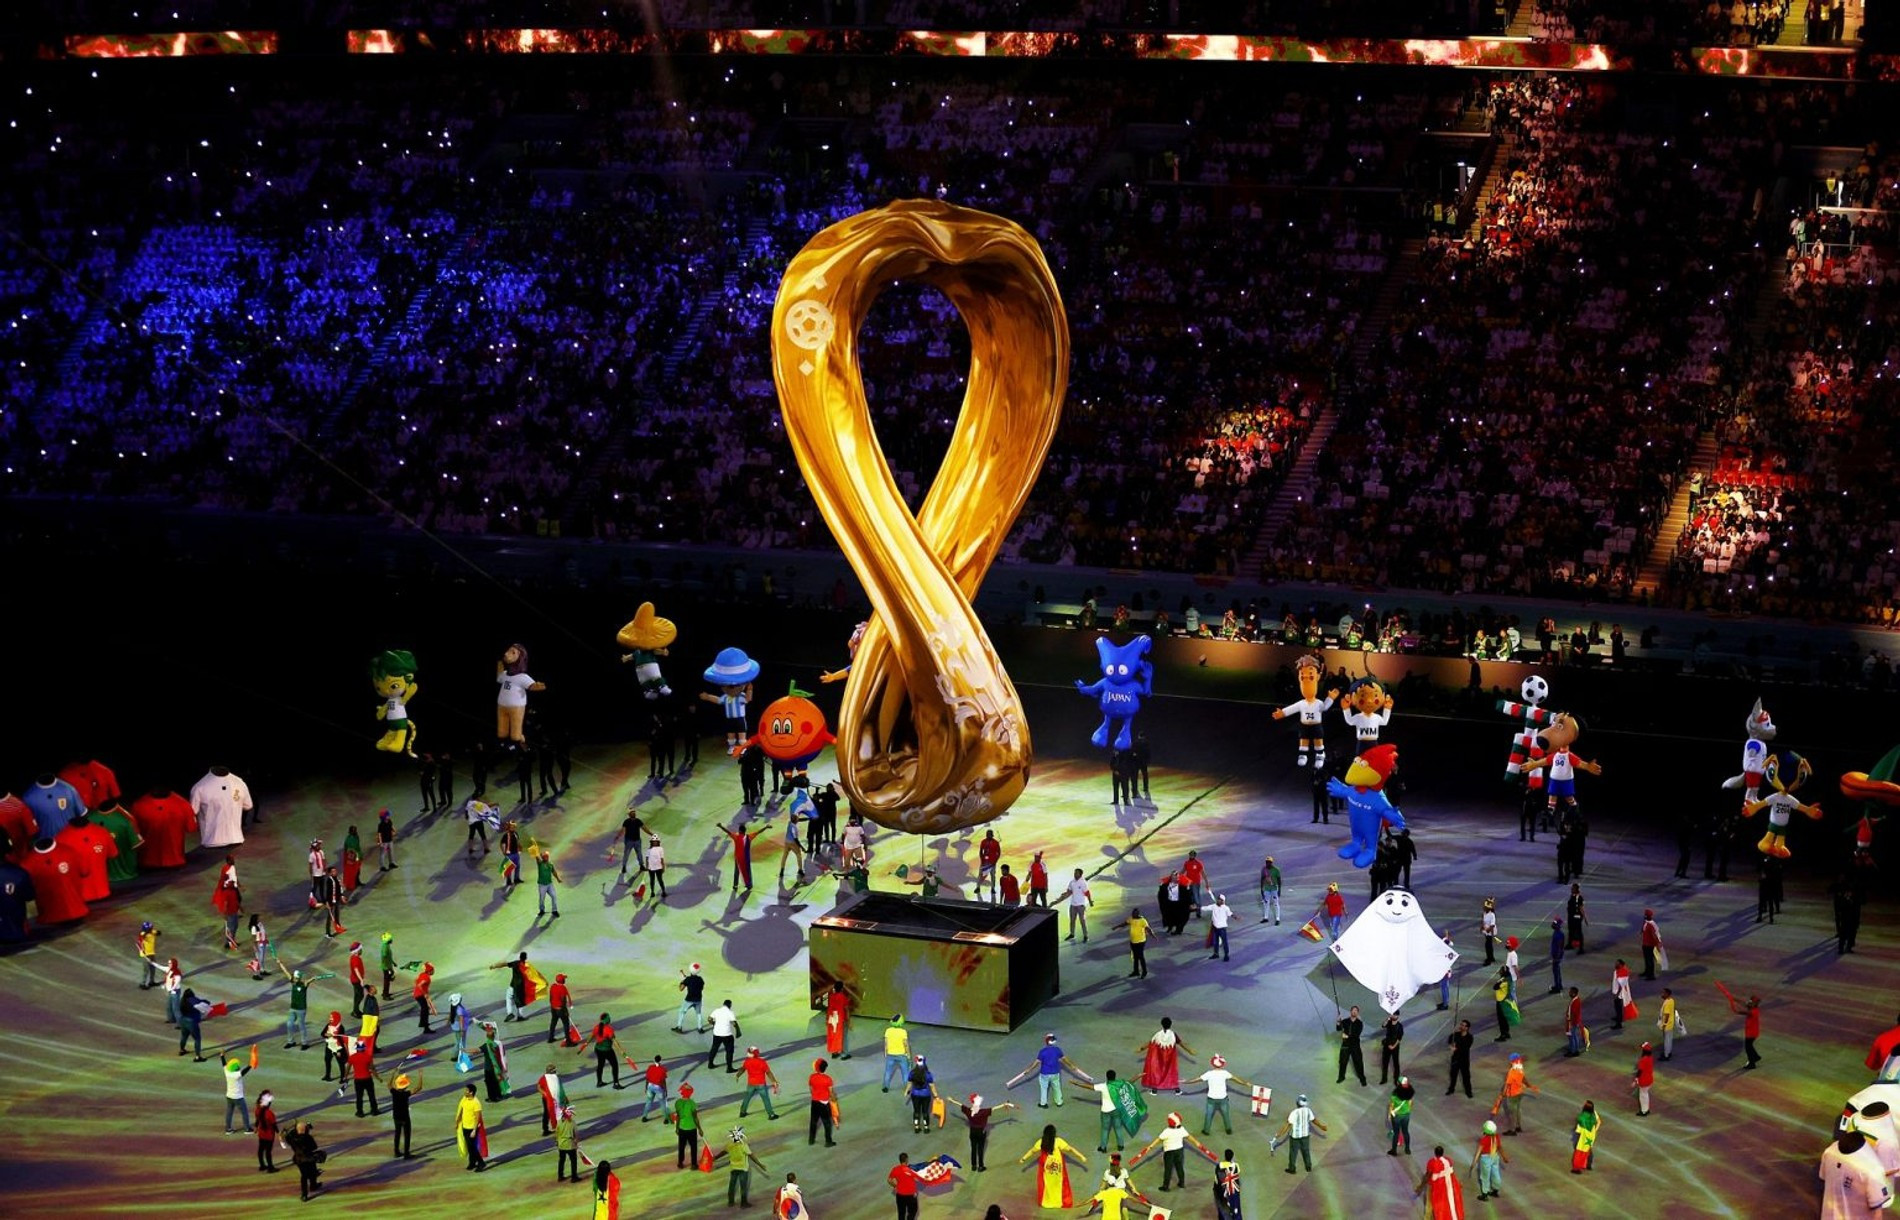 Церемония открытия чемпионата мира в Катаре
Фото: world-cup-2022.ru